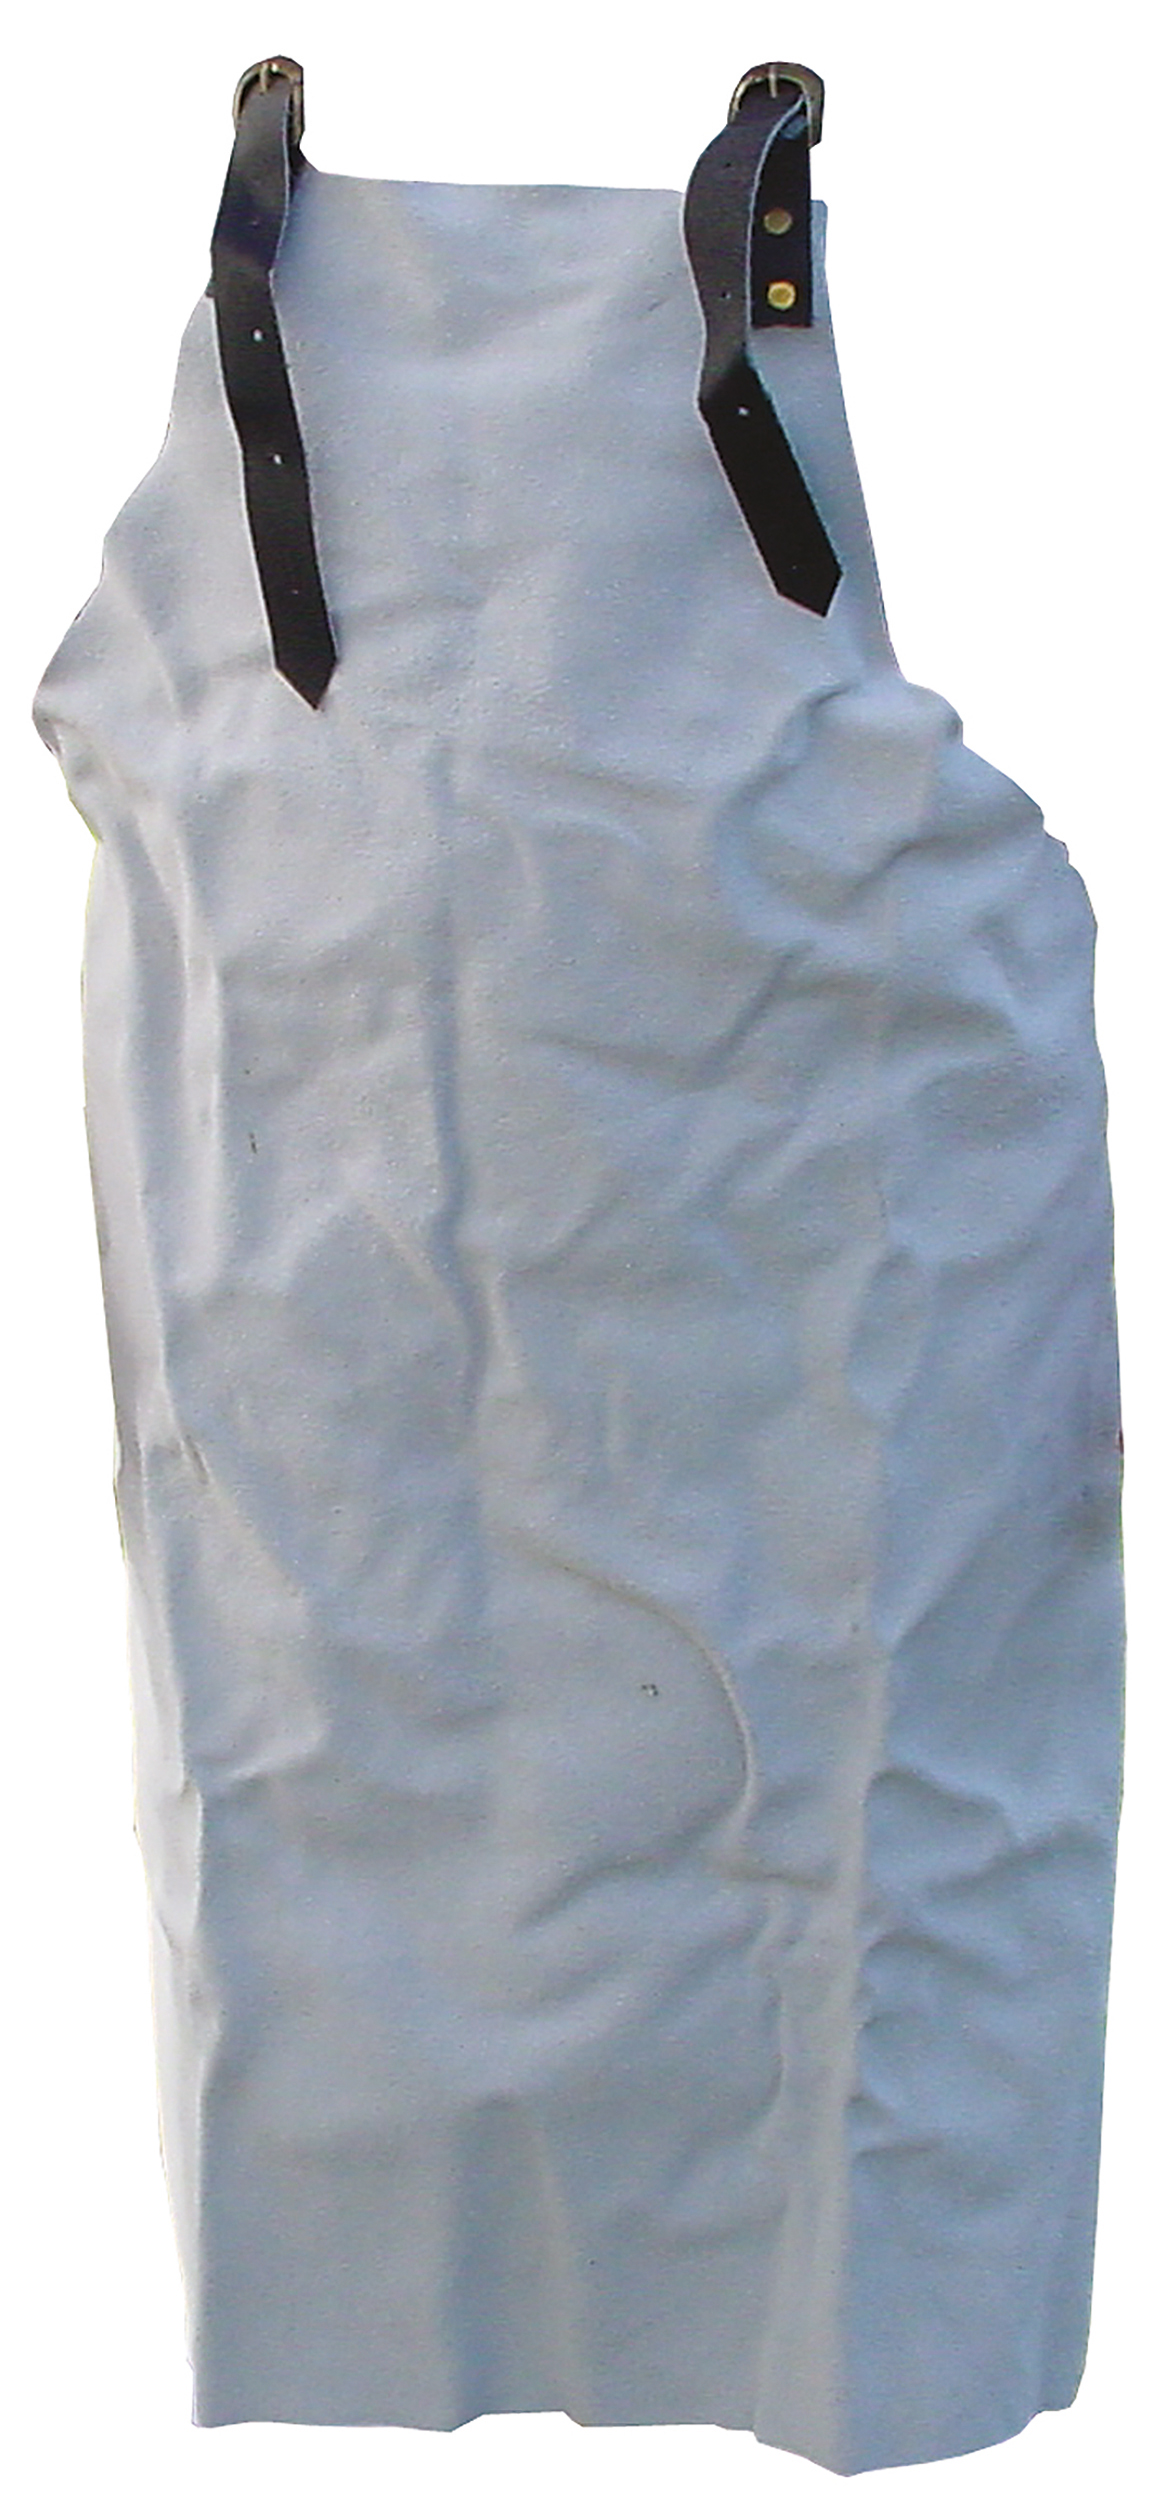 Schweisserschürze mit Brustlatz, 100 cm lang, 80 cm breit, Spaltleder, natur, Lederstärke: 1,4 - 1,8mm